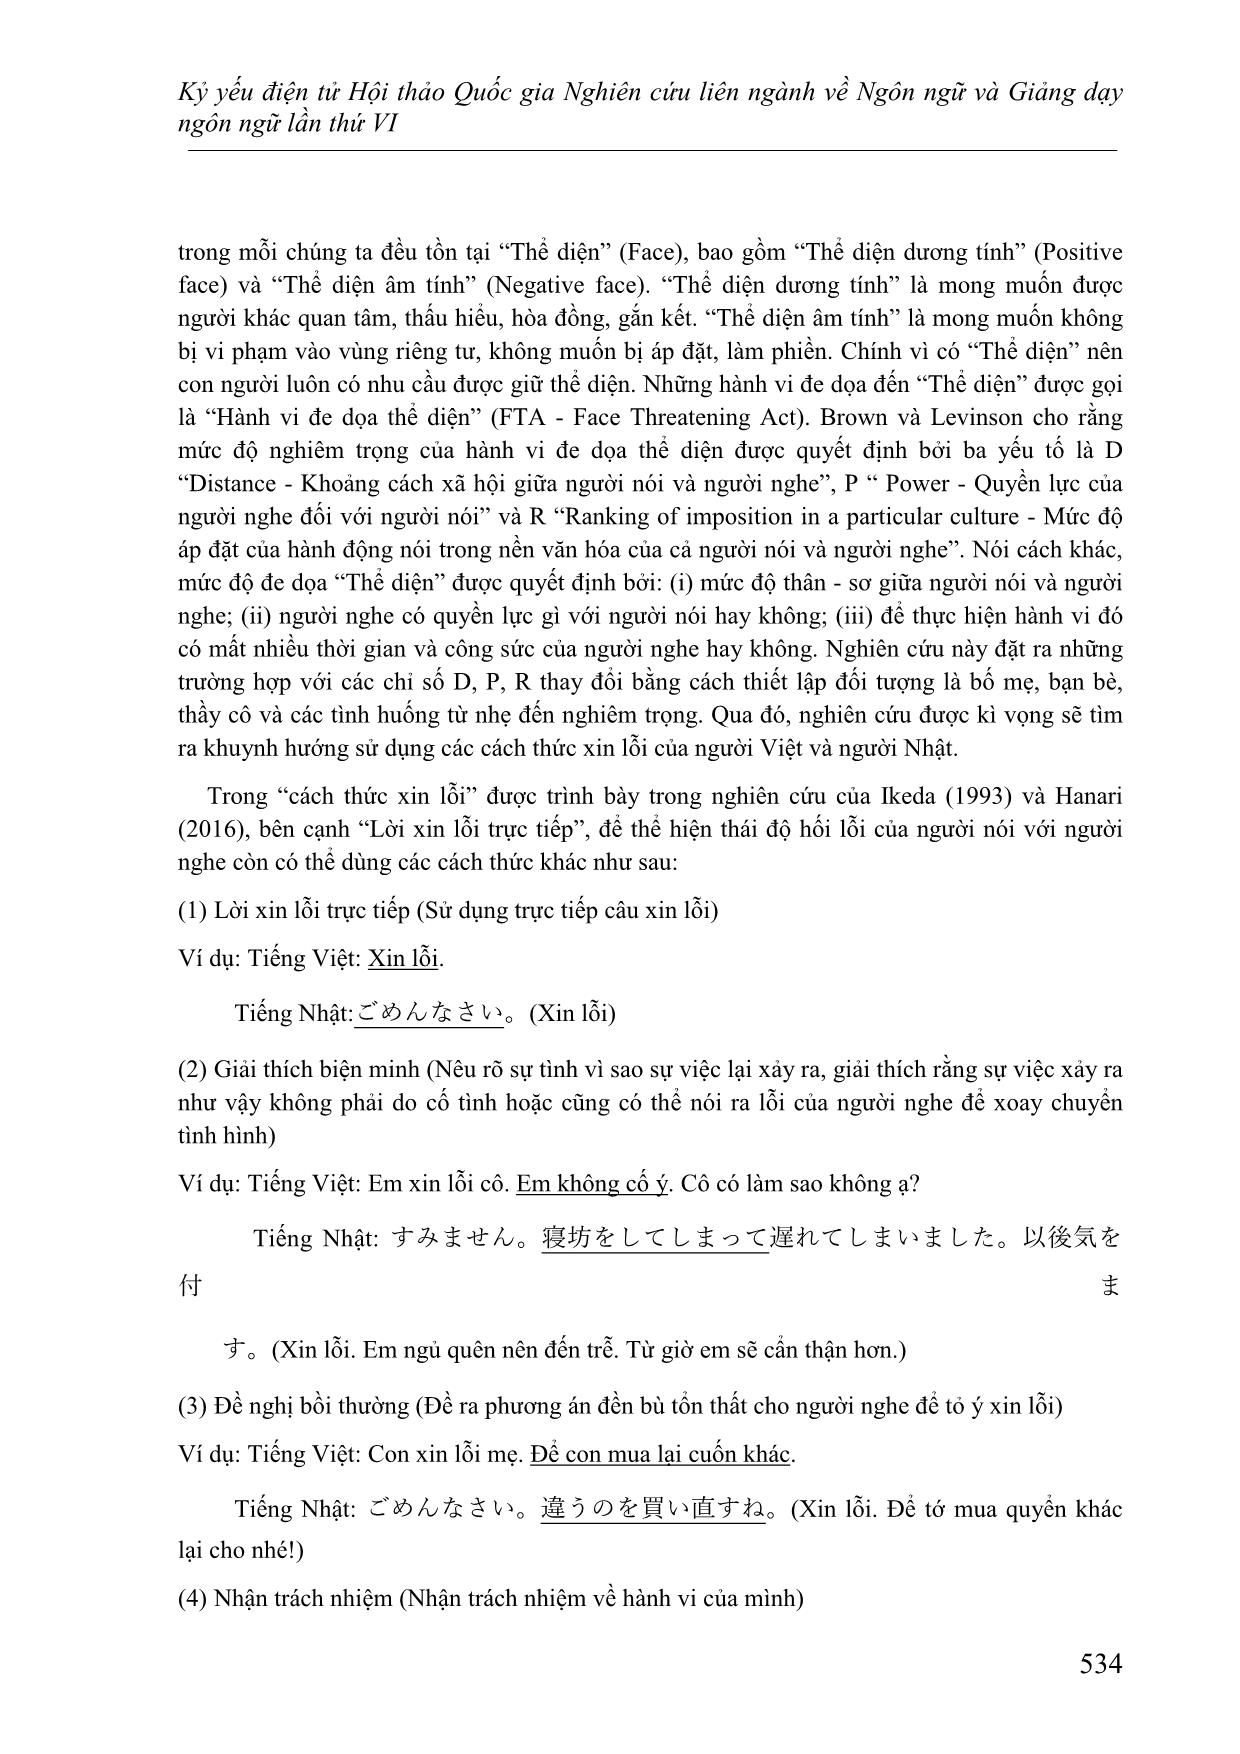 Các cách thức xin lỗi trong tiếng Việt và tiếng Nhật - Đối chiếu dựa trên lý thuyết lịch sự của Brown và Levinson trang 2